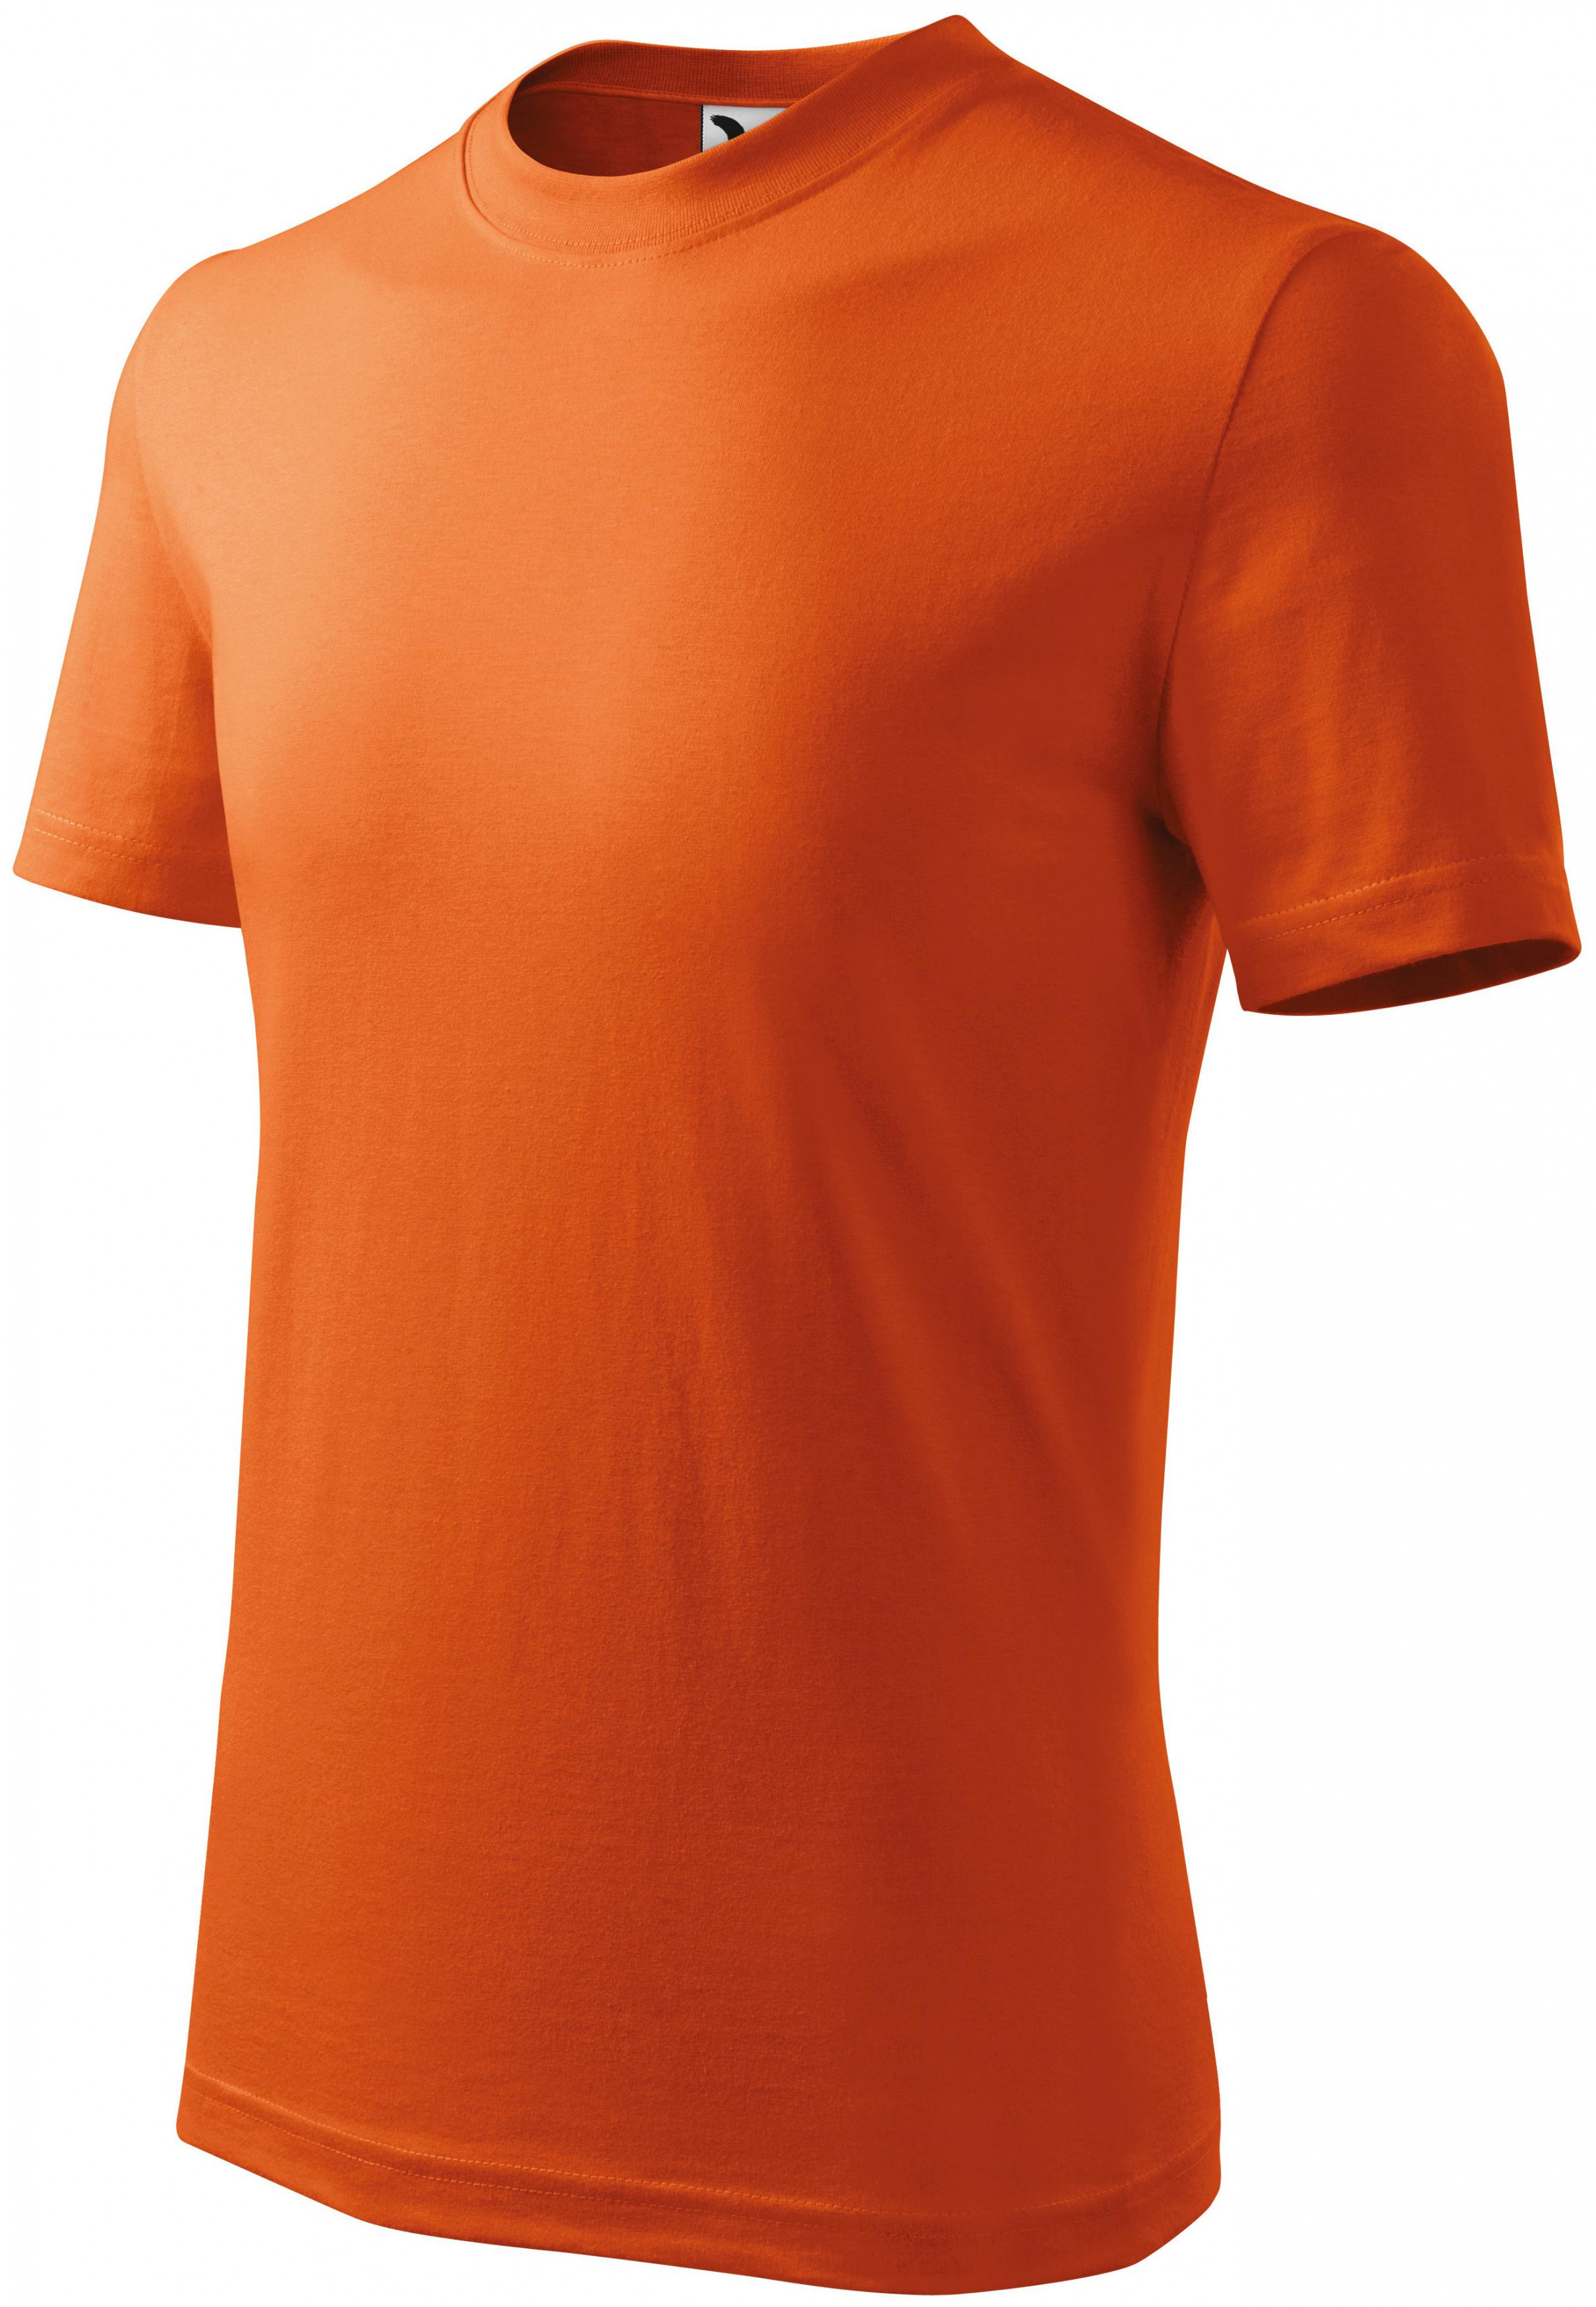 Detské tričko jednoduché, oranžová, 122cm / 6rokov